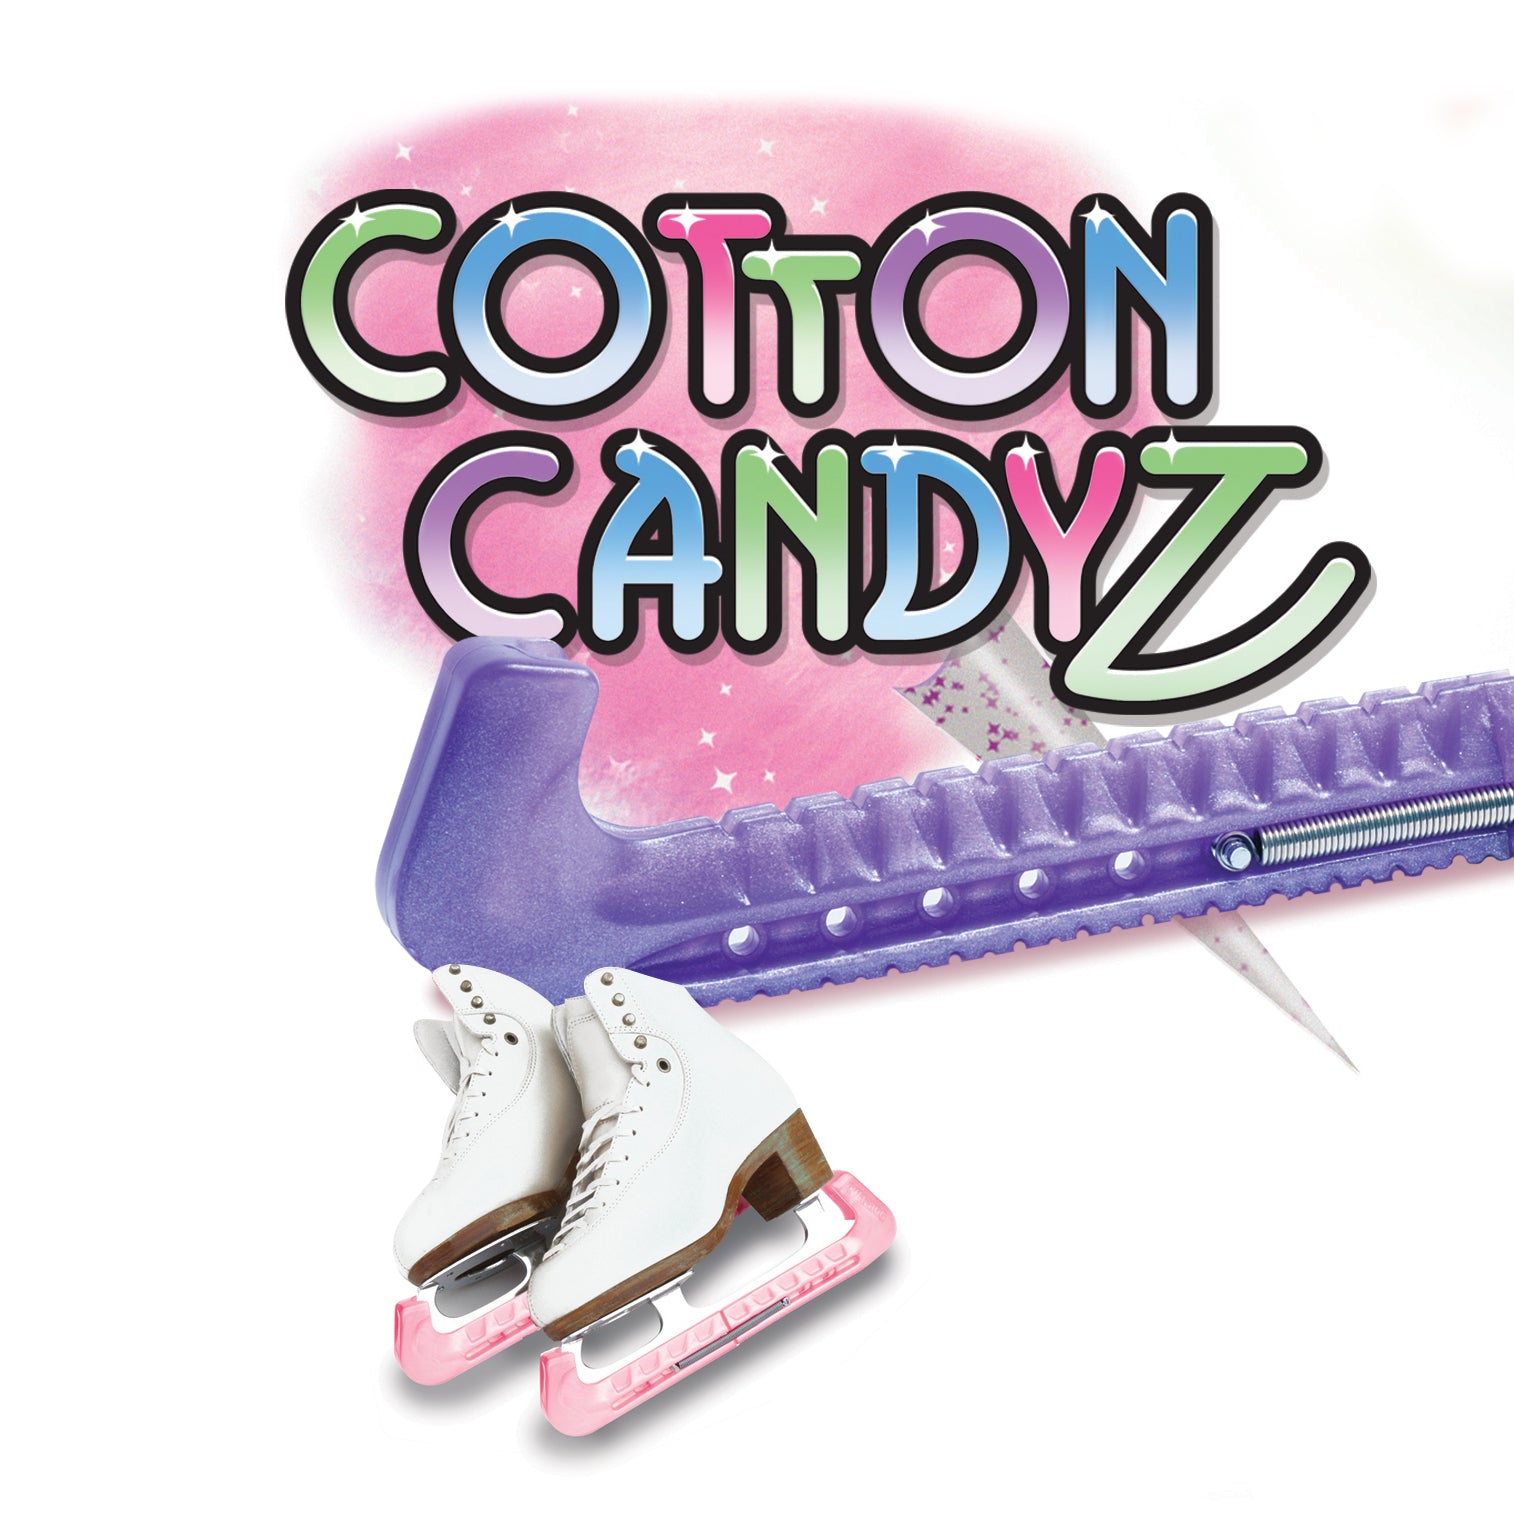 Cotton CandyZ